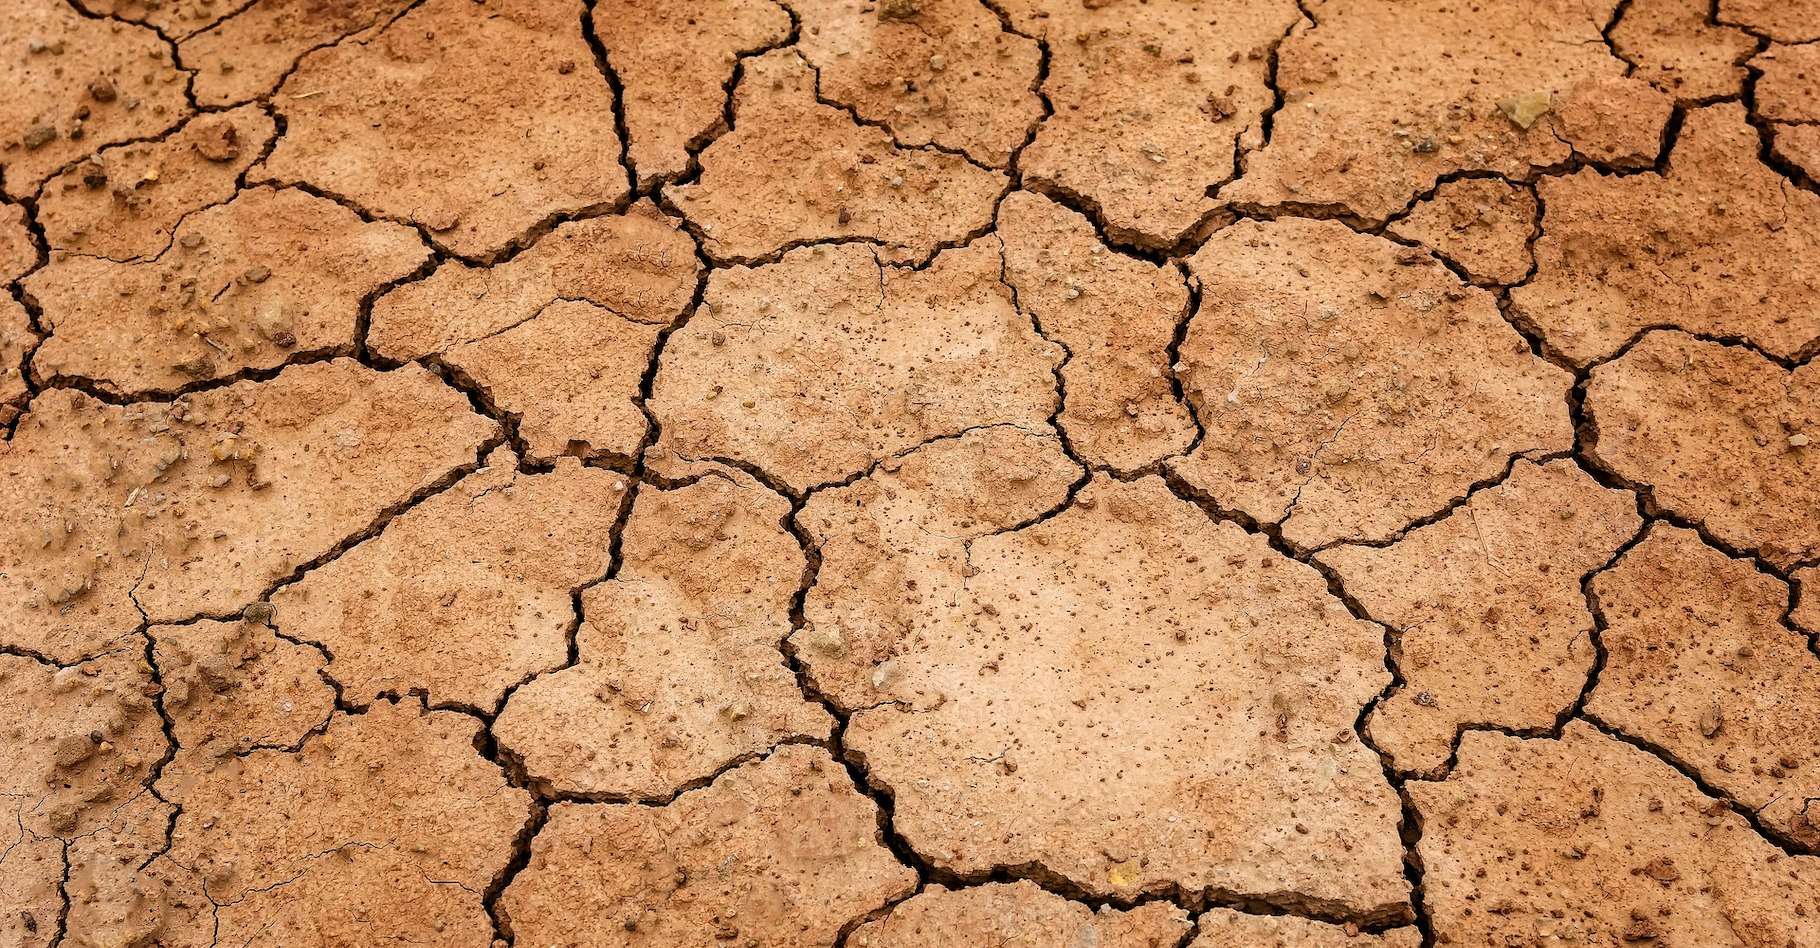     La Martinique est placée en situation de "Crise sécheresse"

